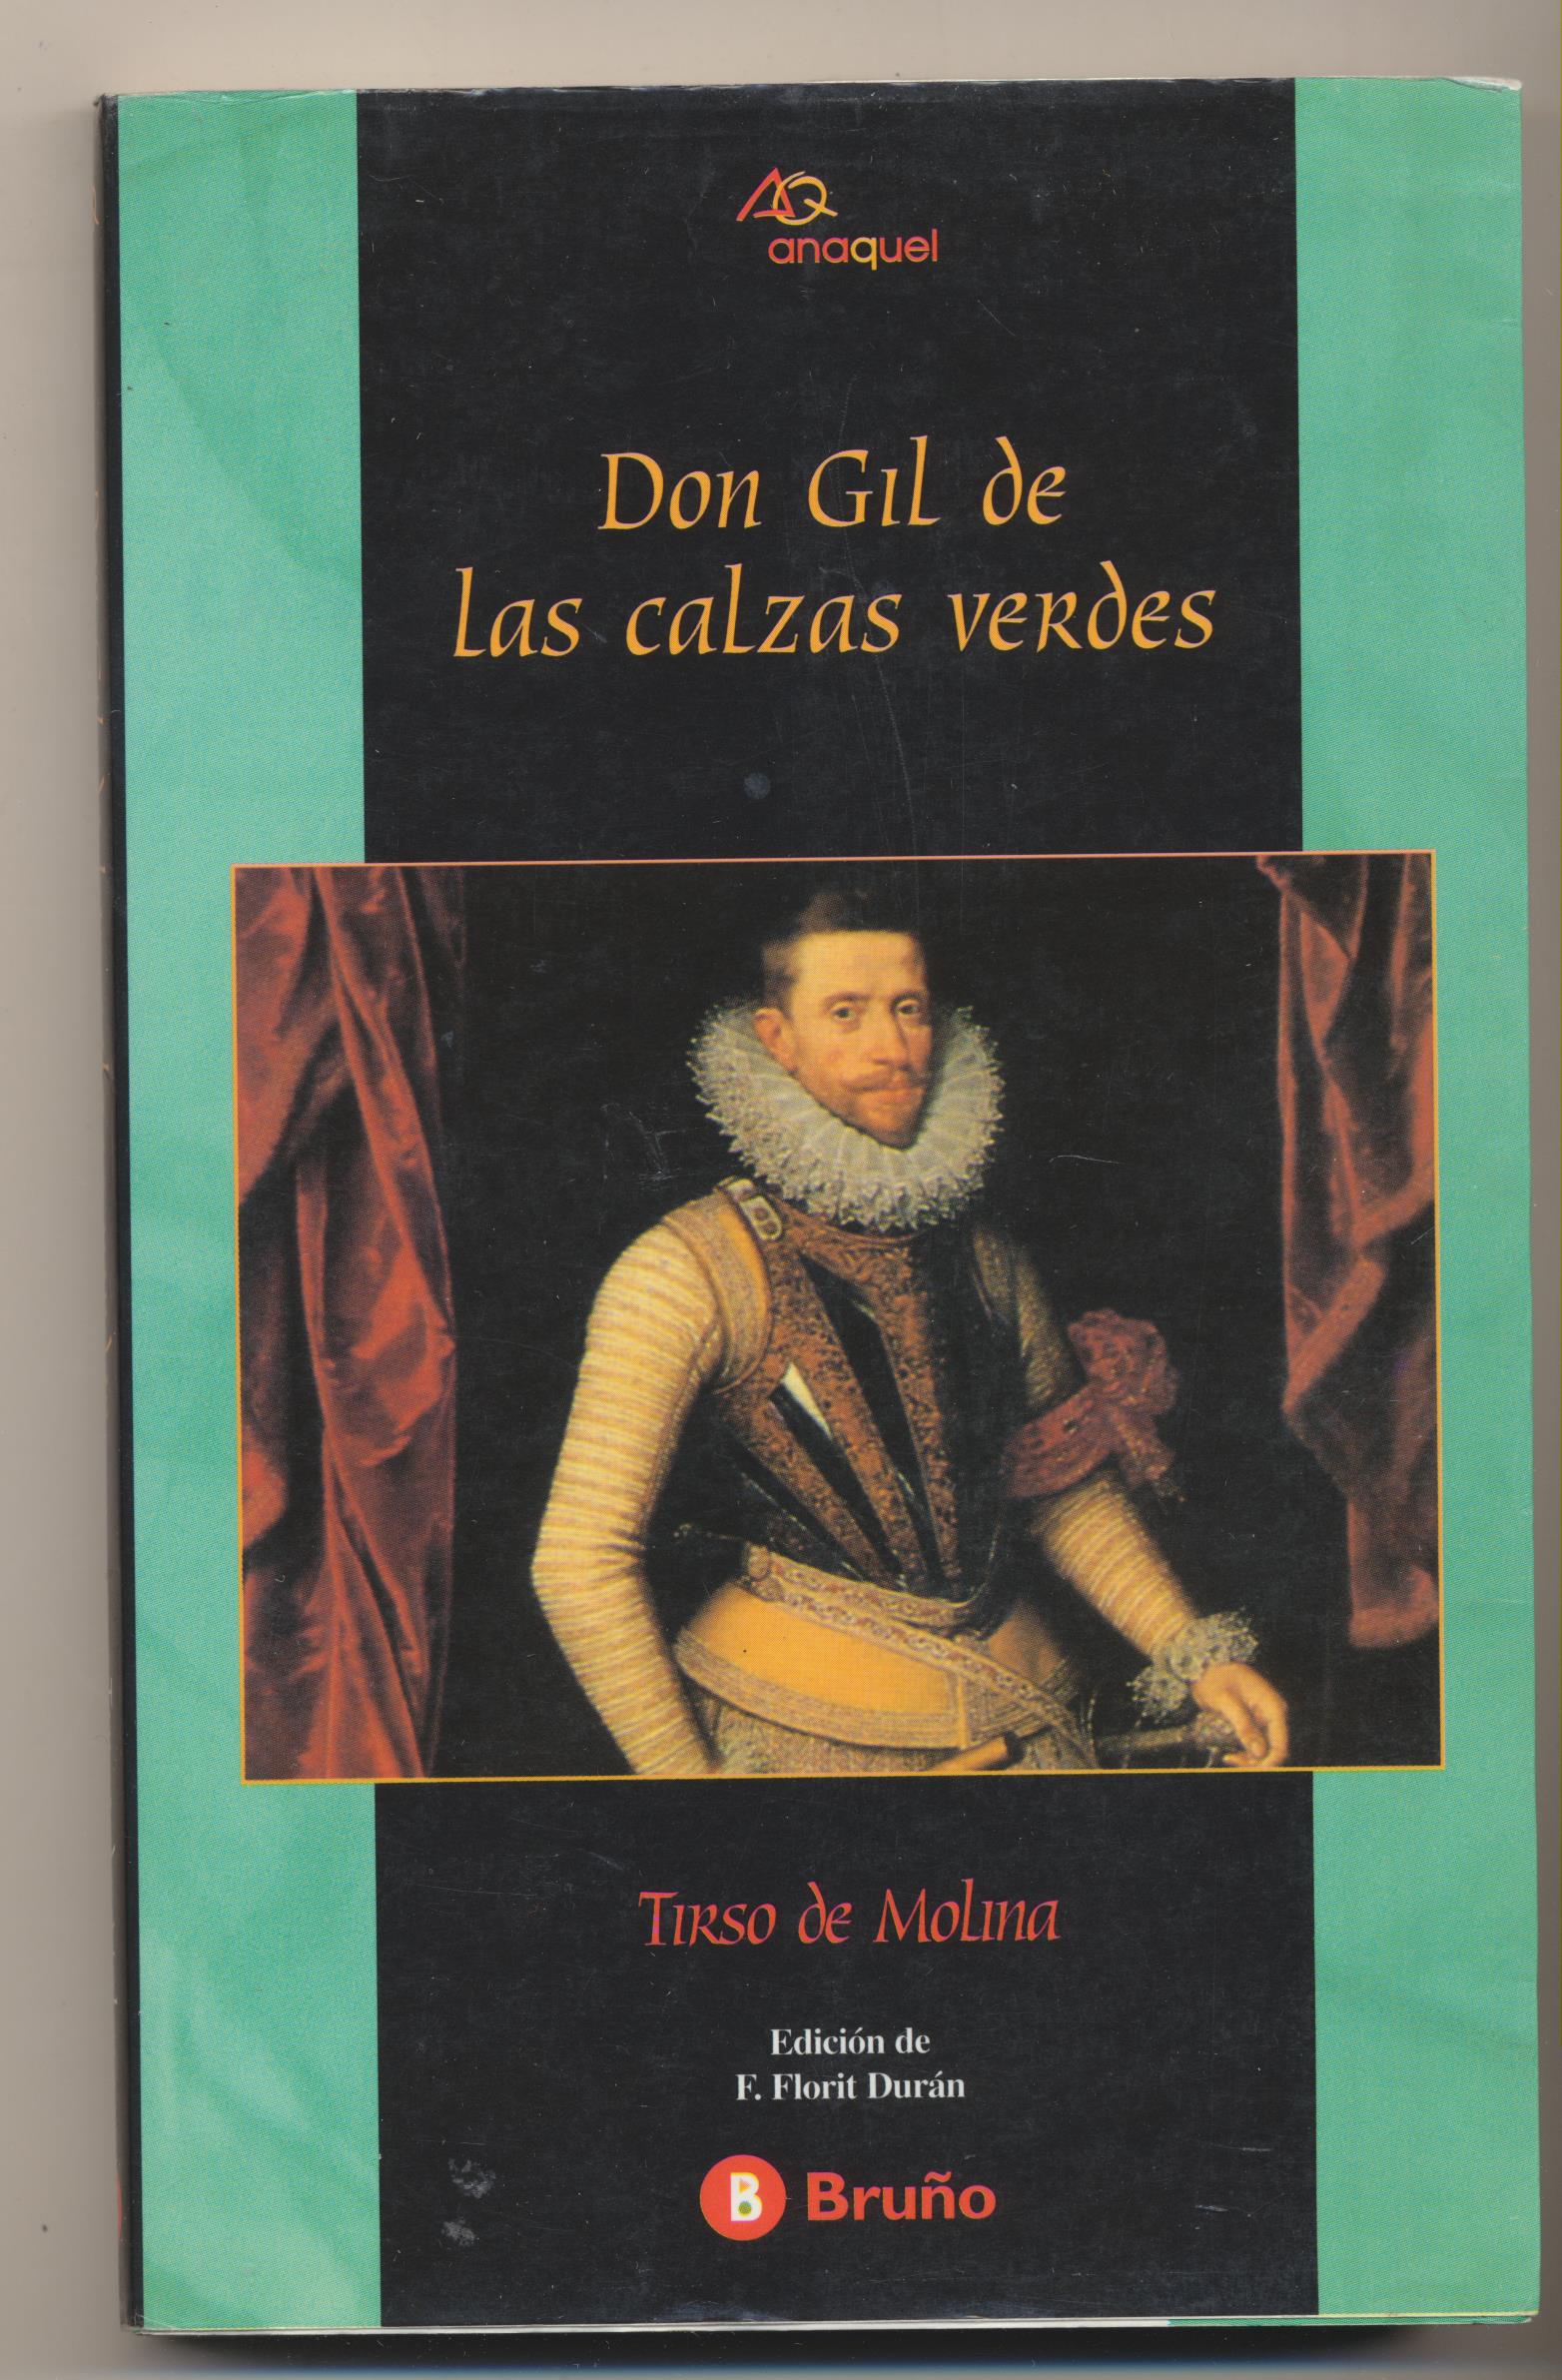 Tirso de Molina. Don Gil de las calzas verdes. 2ª Edición Bruño 1996